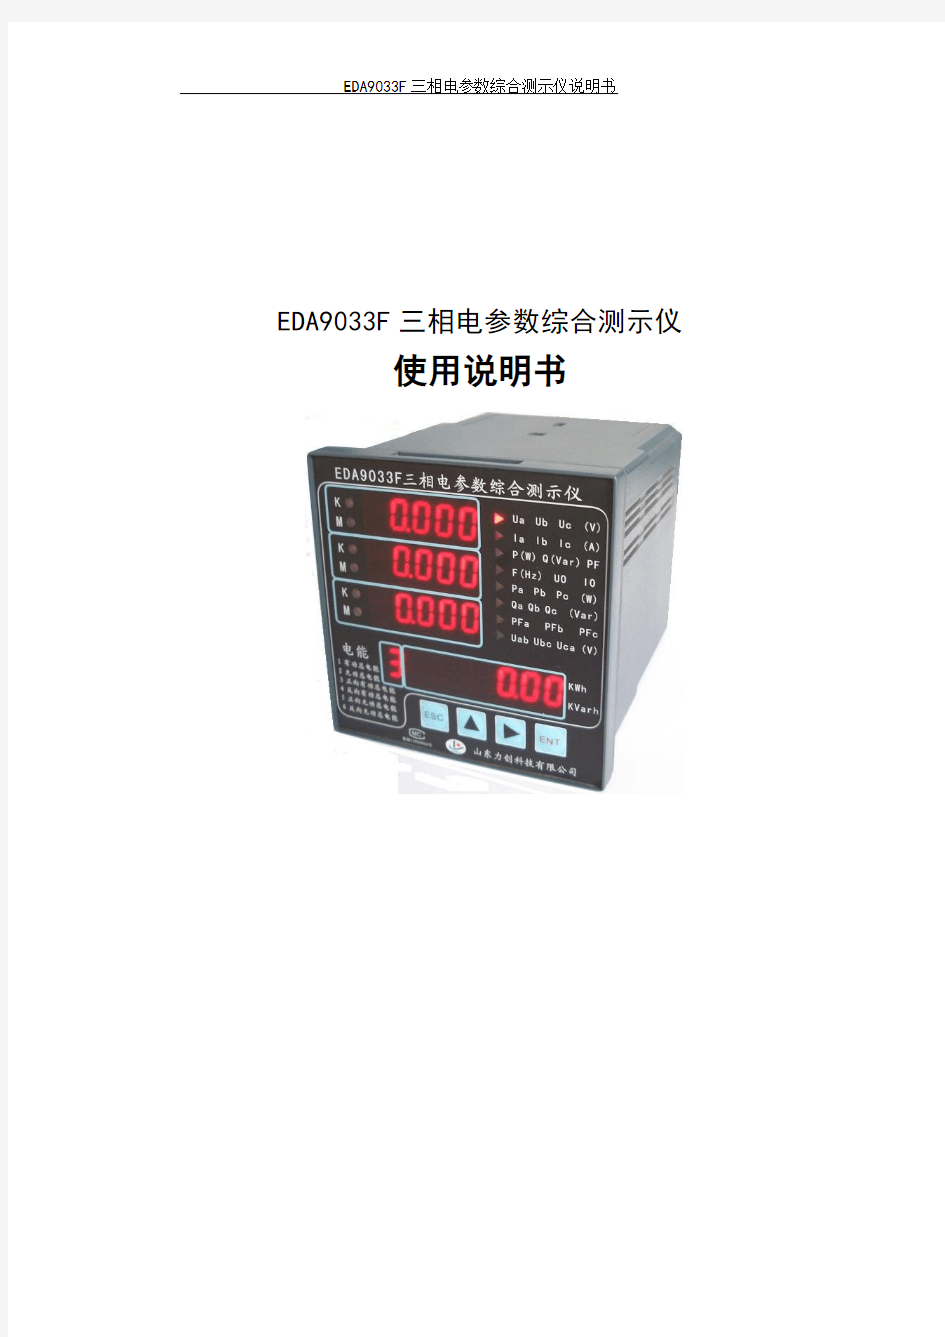 EDA9033F三相电参数综合测示仪使用说明书